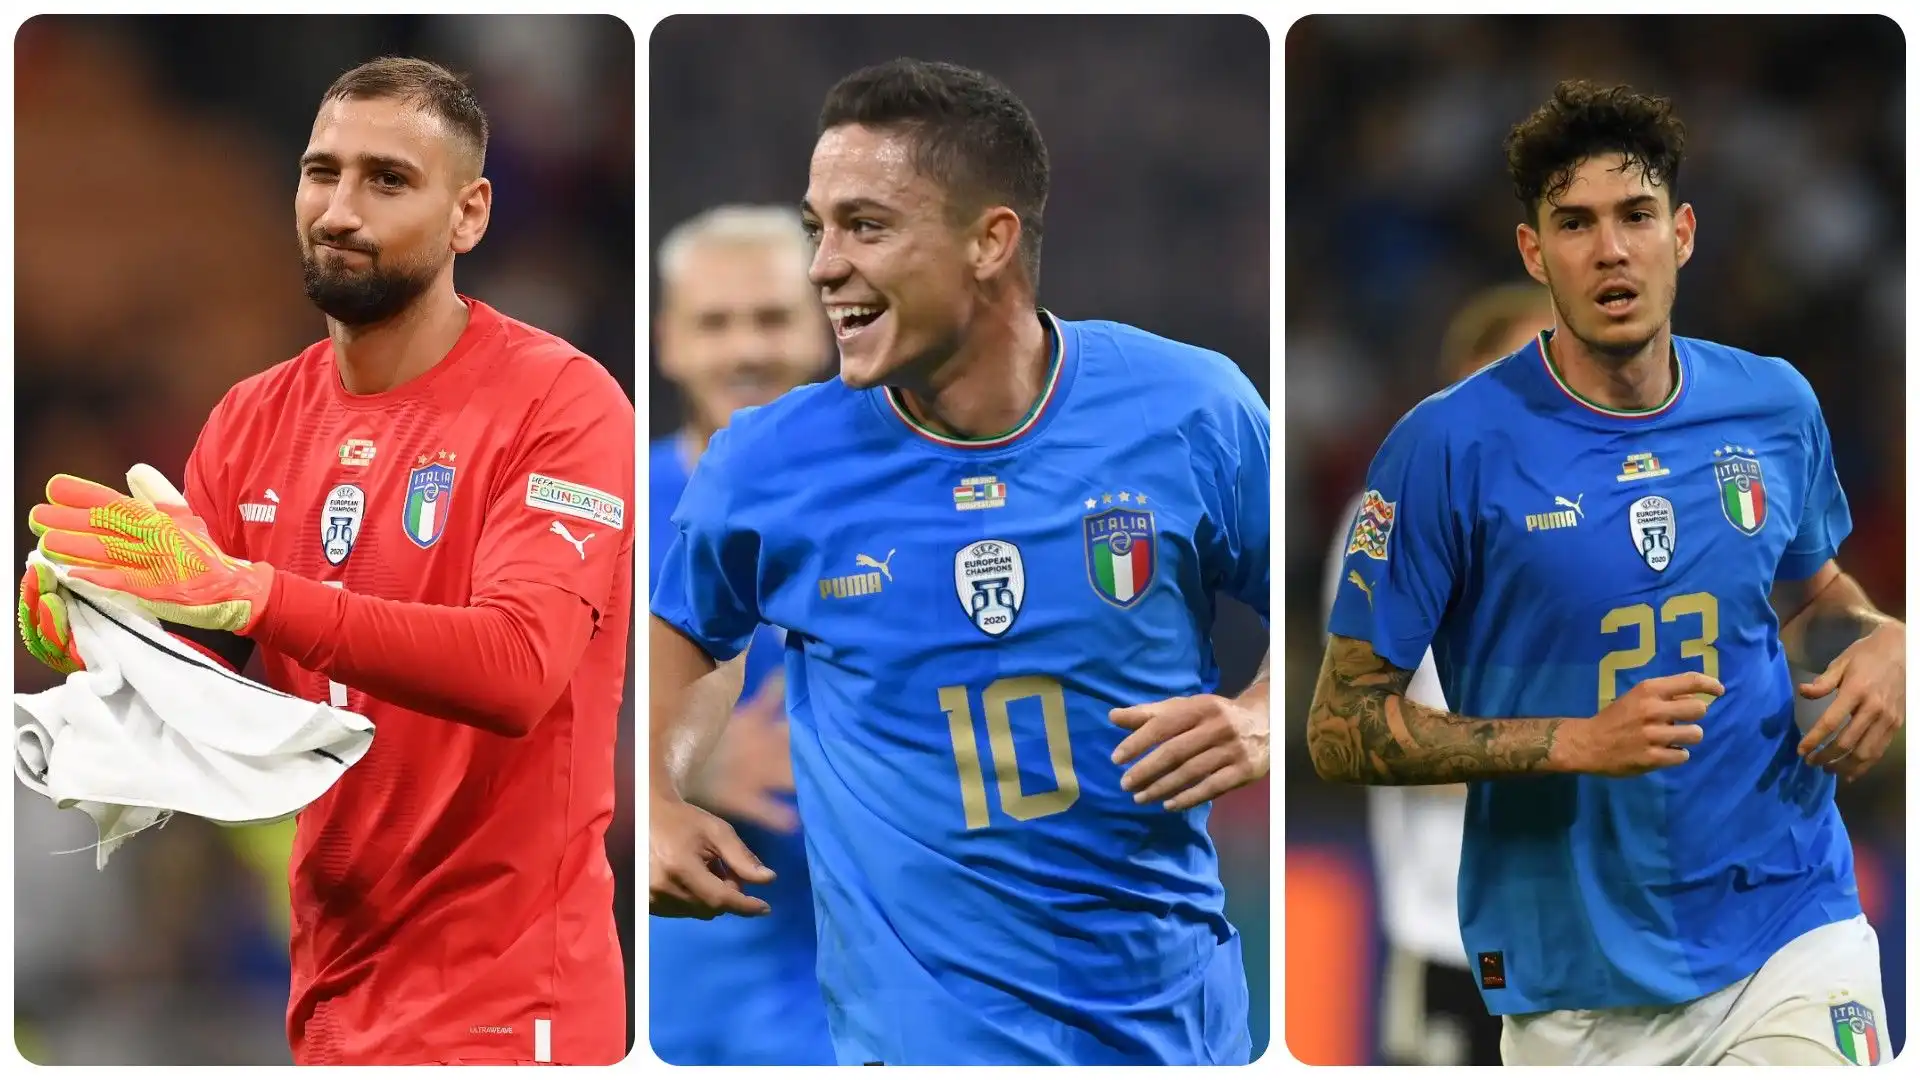 I 10 calciatori italiani più preziosi. La classifica in foto. Fonte: Transfermarkt